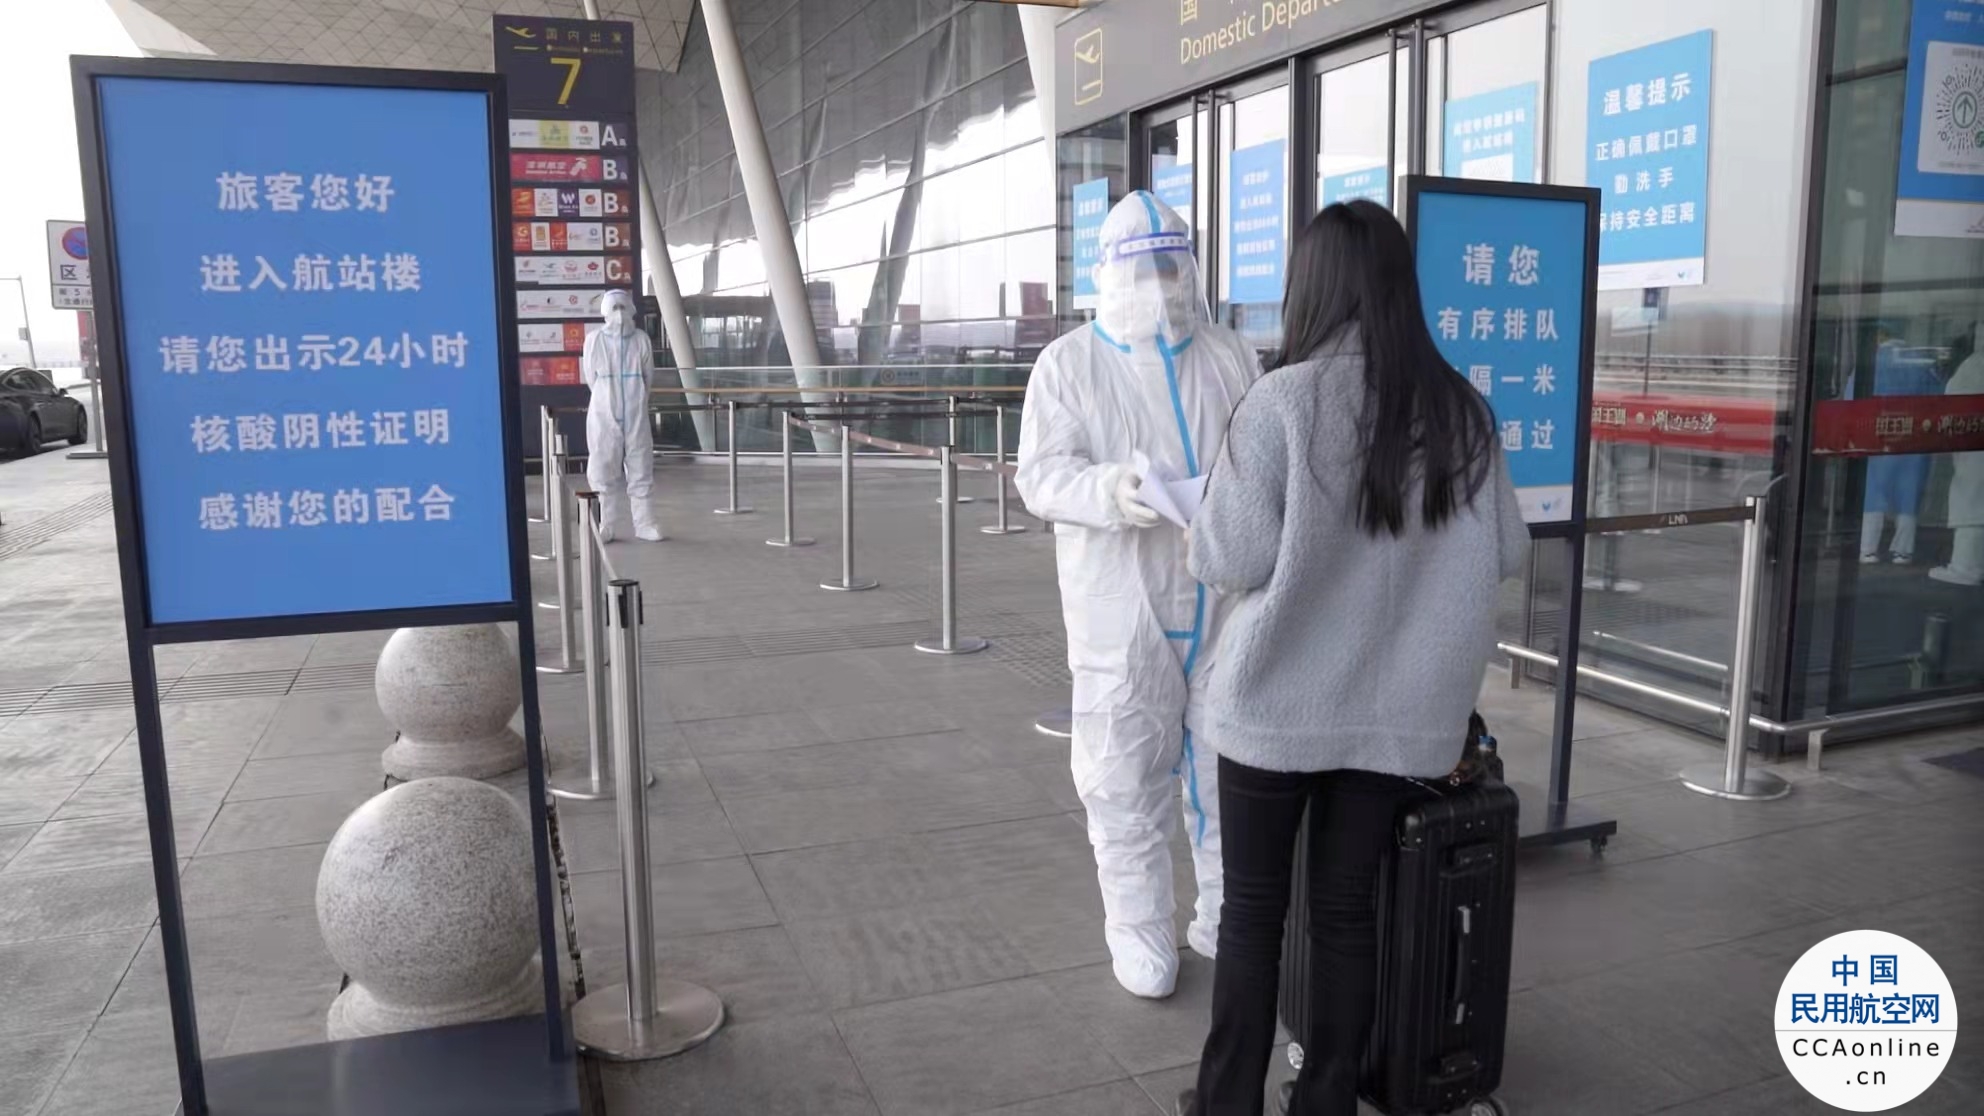 沈阳桃仙国际机场成功查堵两名冒用他人行程码隐瞒行程人员